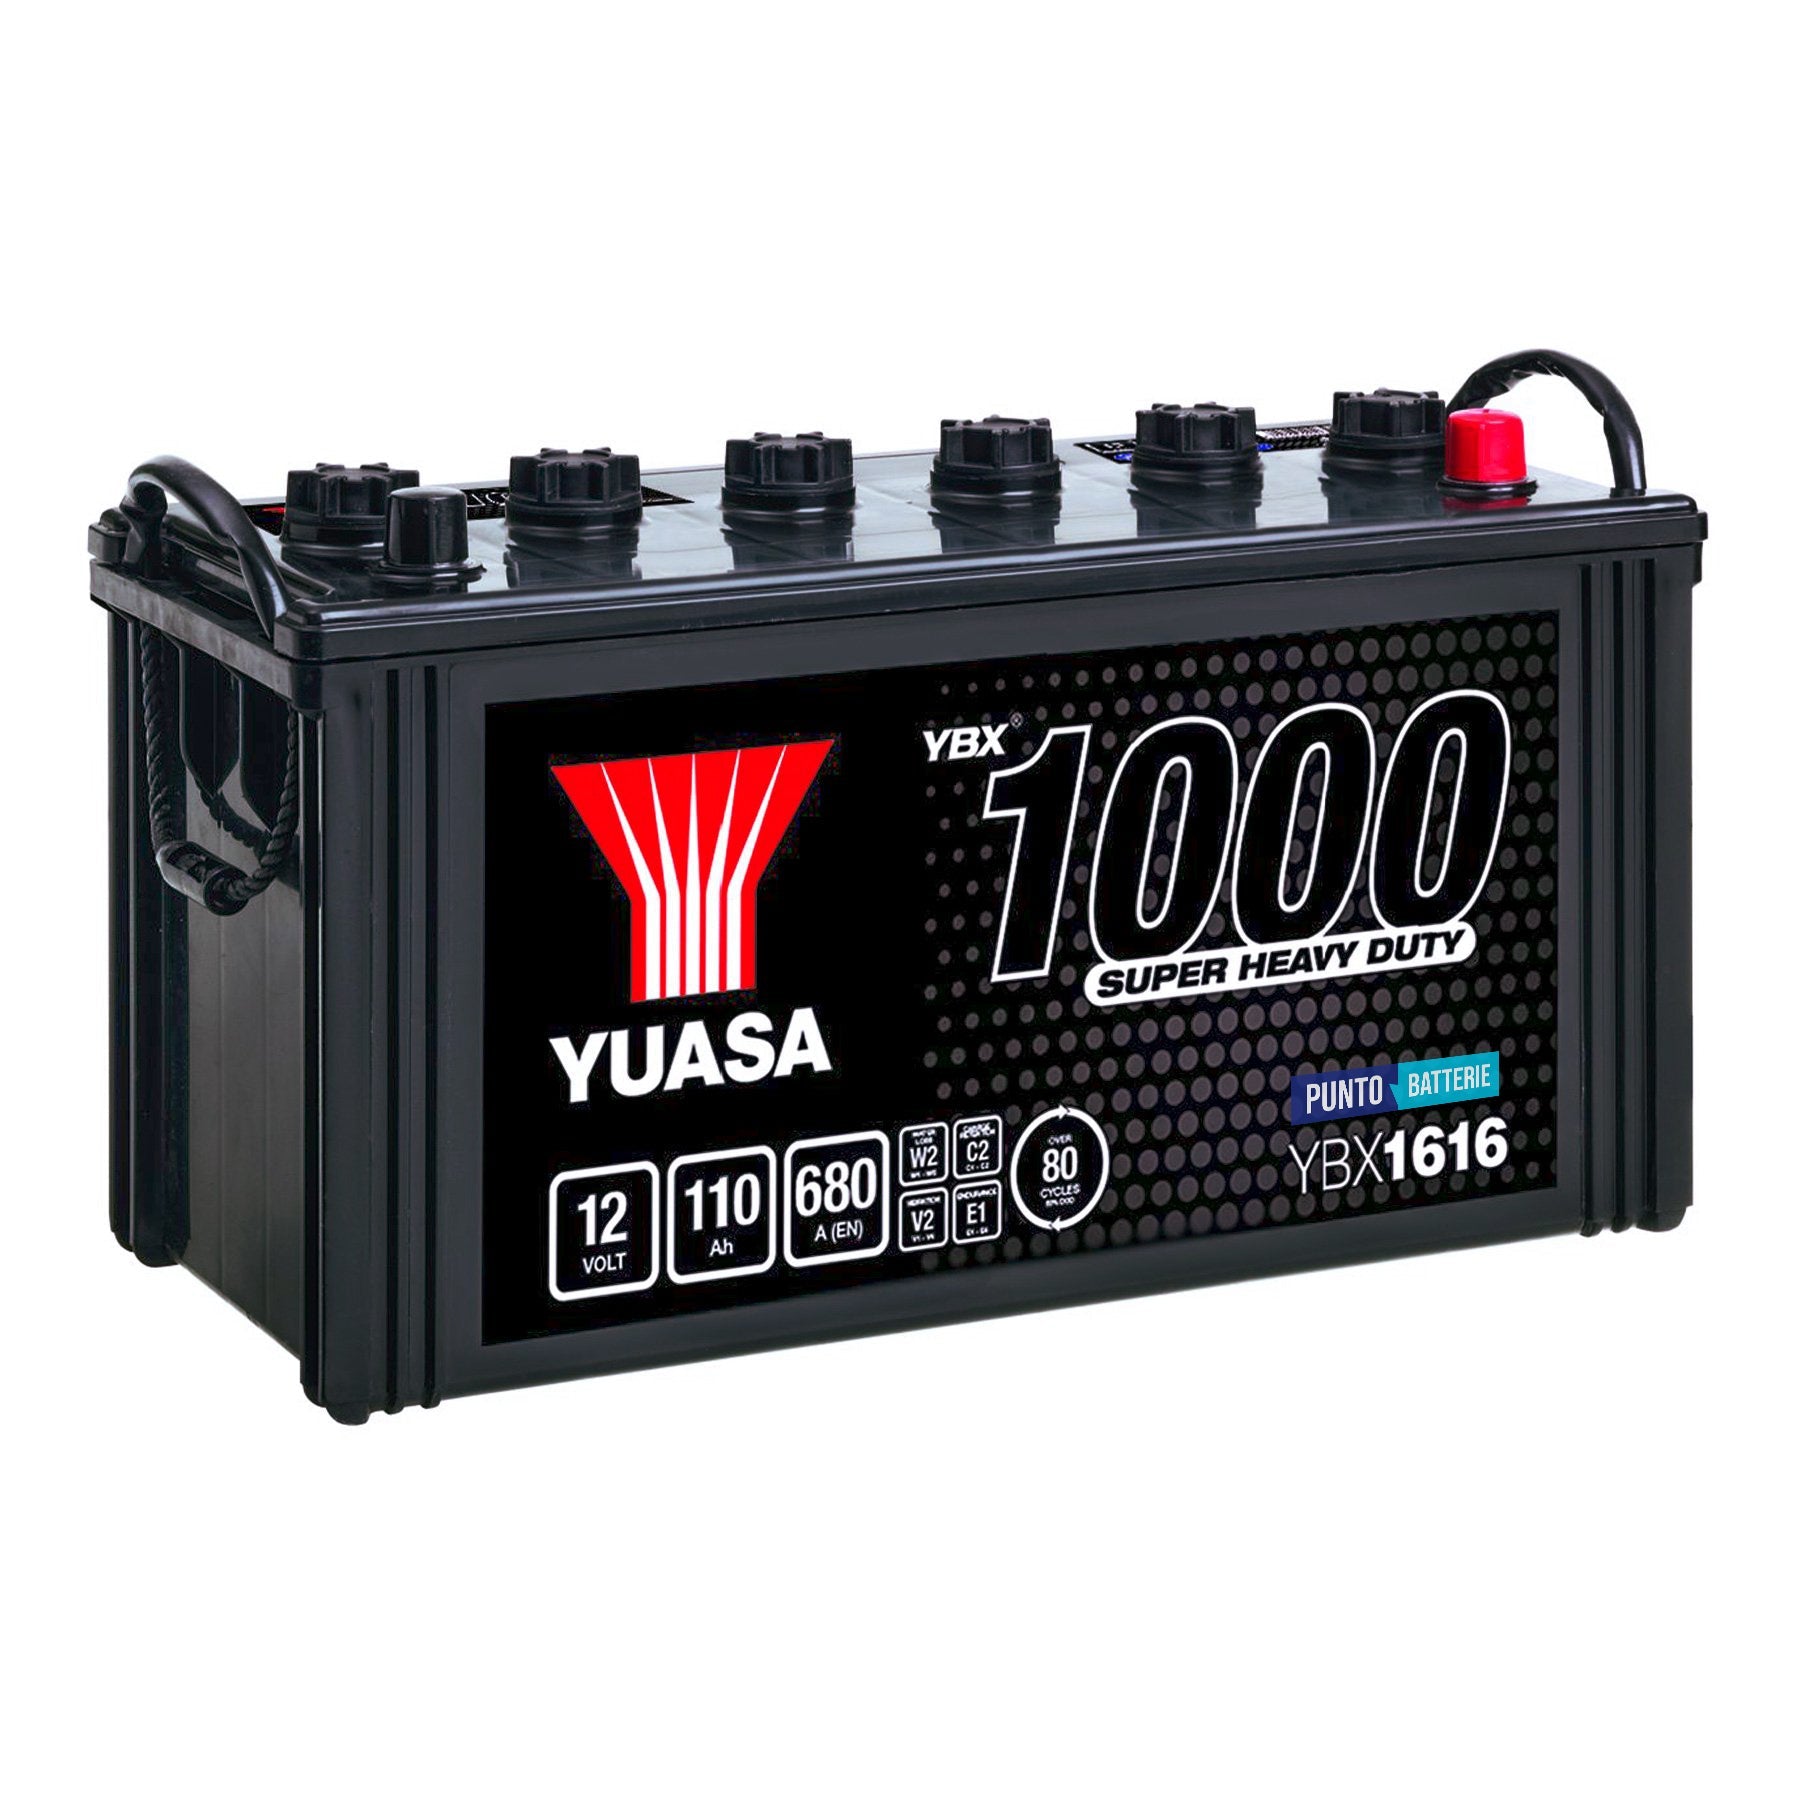 Batteria originale Yuasa YBX1000 YBX1616, dimensioni 407 x 176 x 234, polo positivo a destra, 12 volt, 110 amperora, 680 ampere. Batteria per camion e veicoli pesanti.